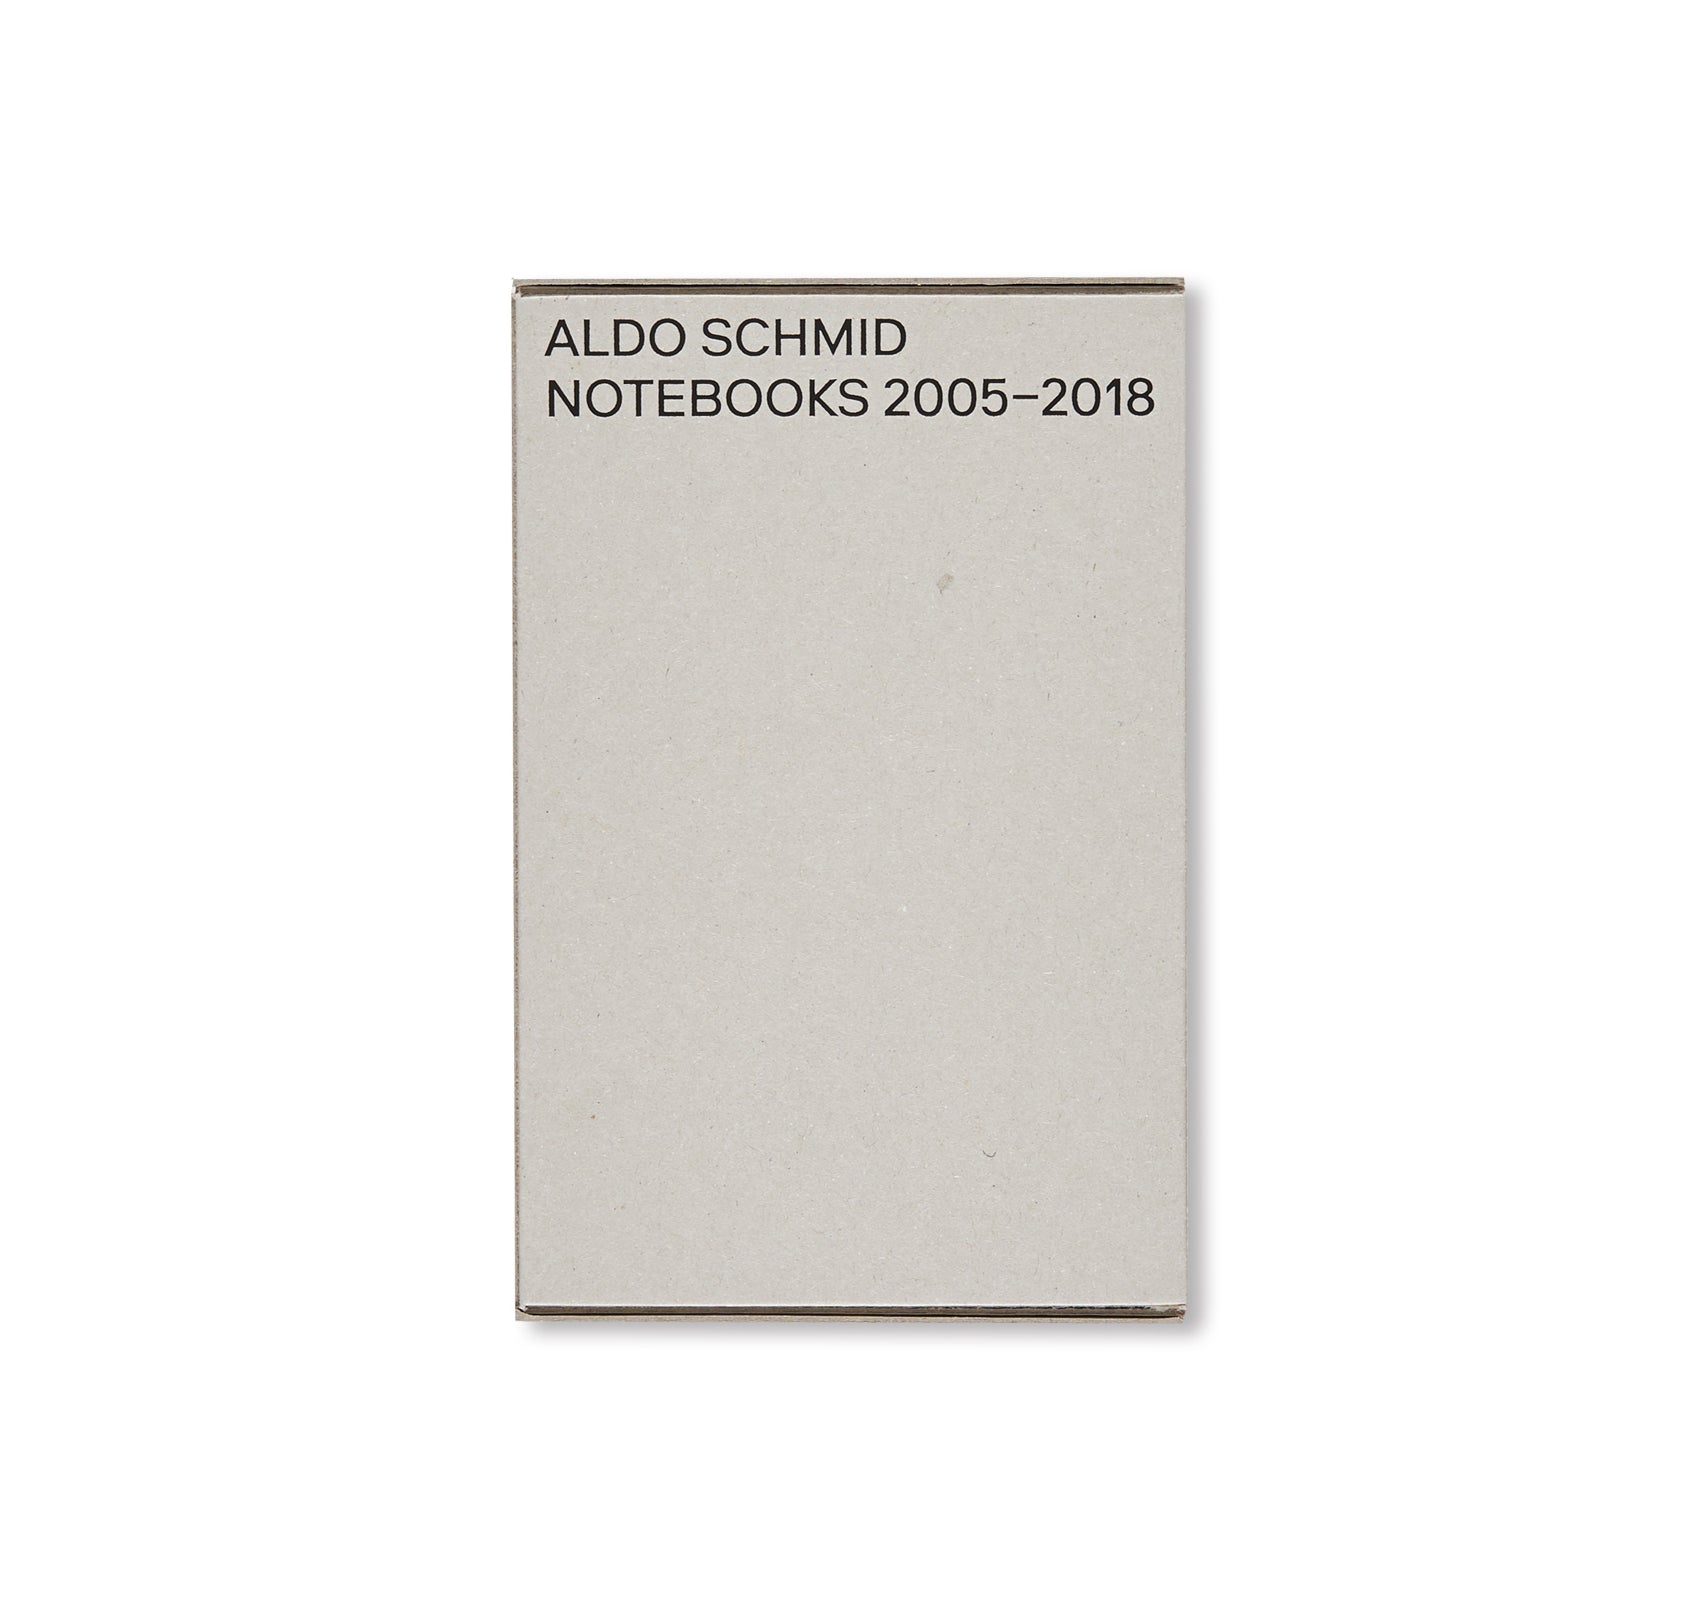 NOTEBOOKS 2005–2018 by Aldo Schmid